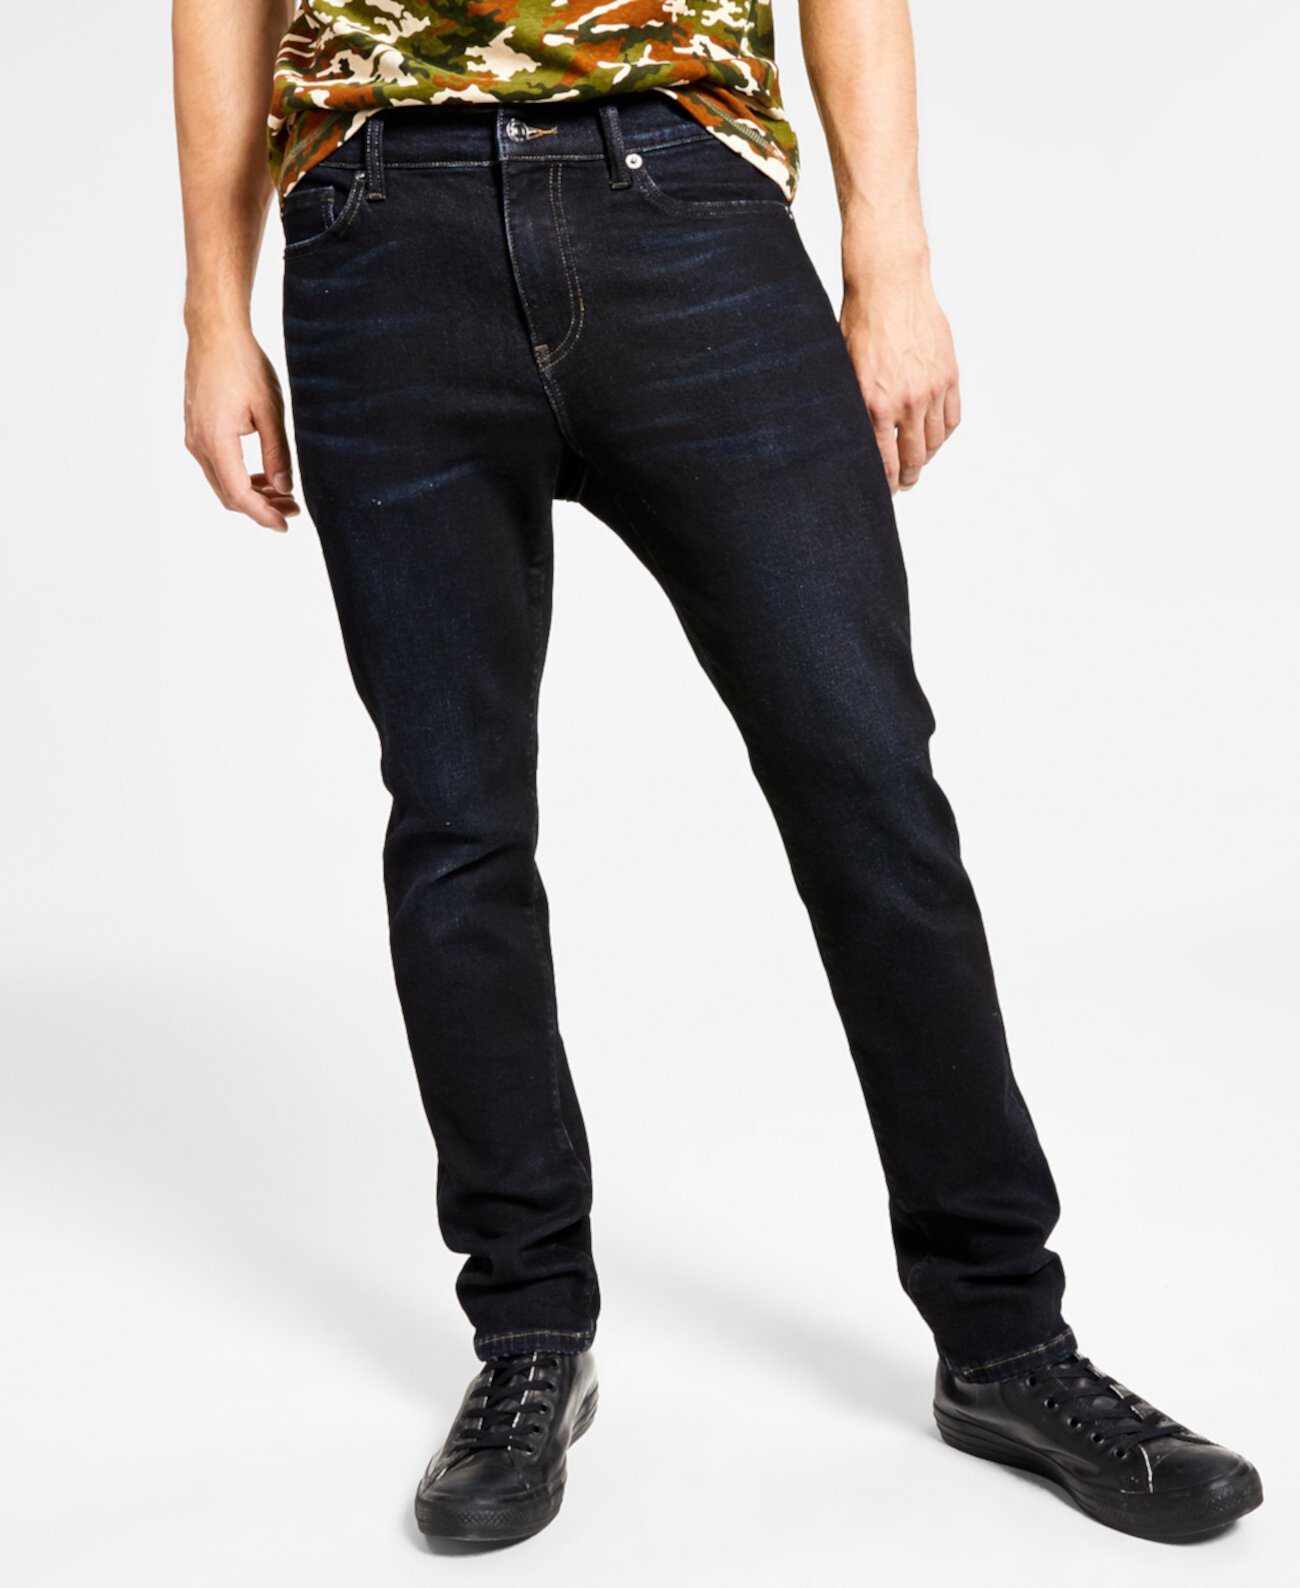 Джинсовые мужские облегающие джинсы Sanctuary